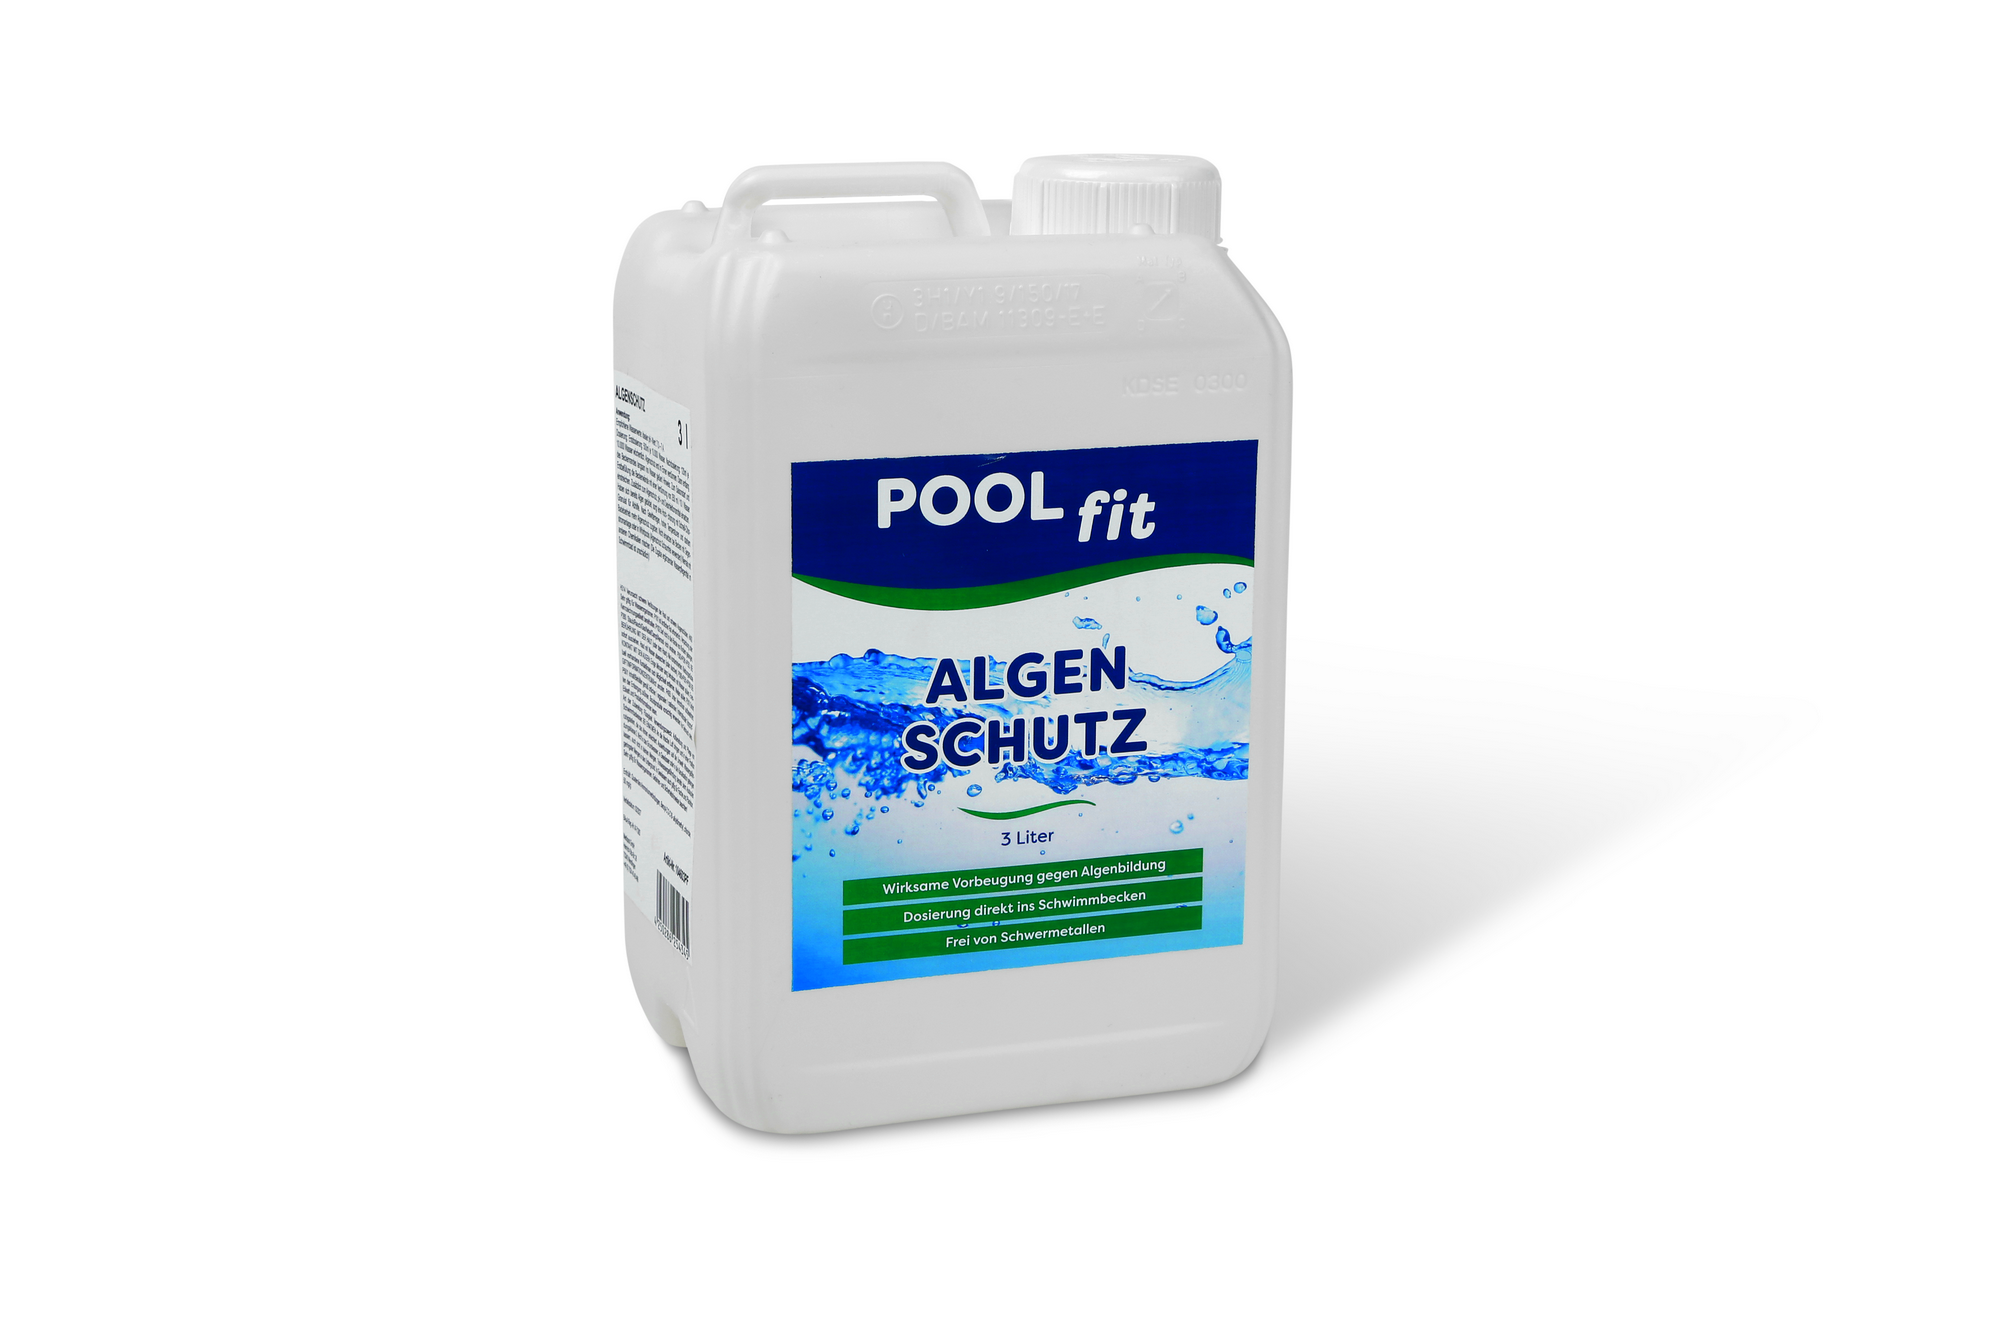 Algenschutz flüssig 3 Liter + product picture